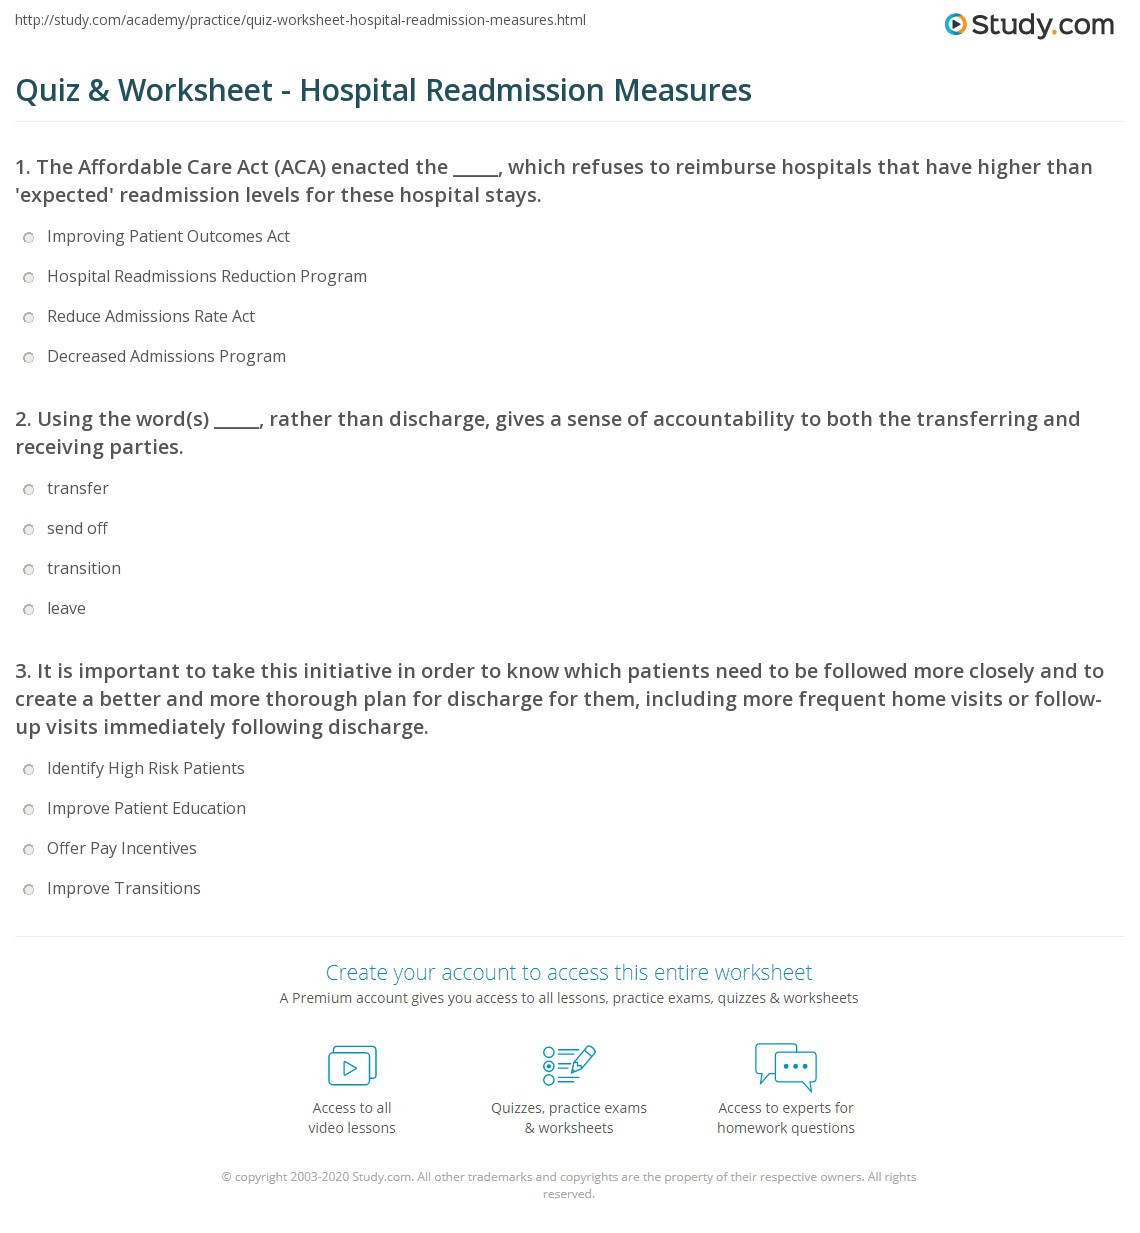 Affordable Care Act Worksheet Quiz &amp; Worksheet Hospital Readmission Measures